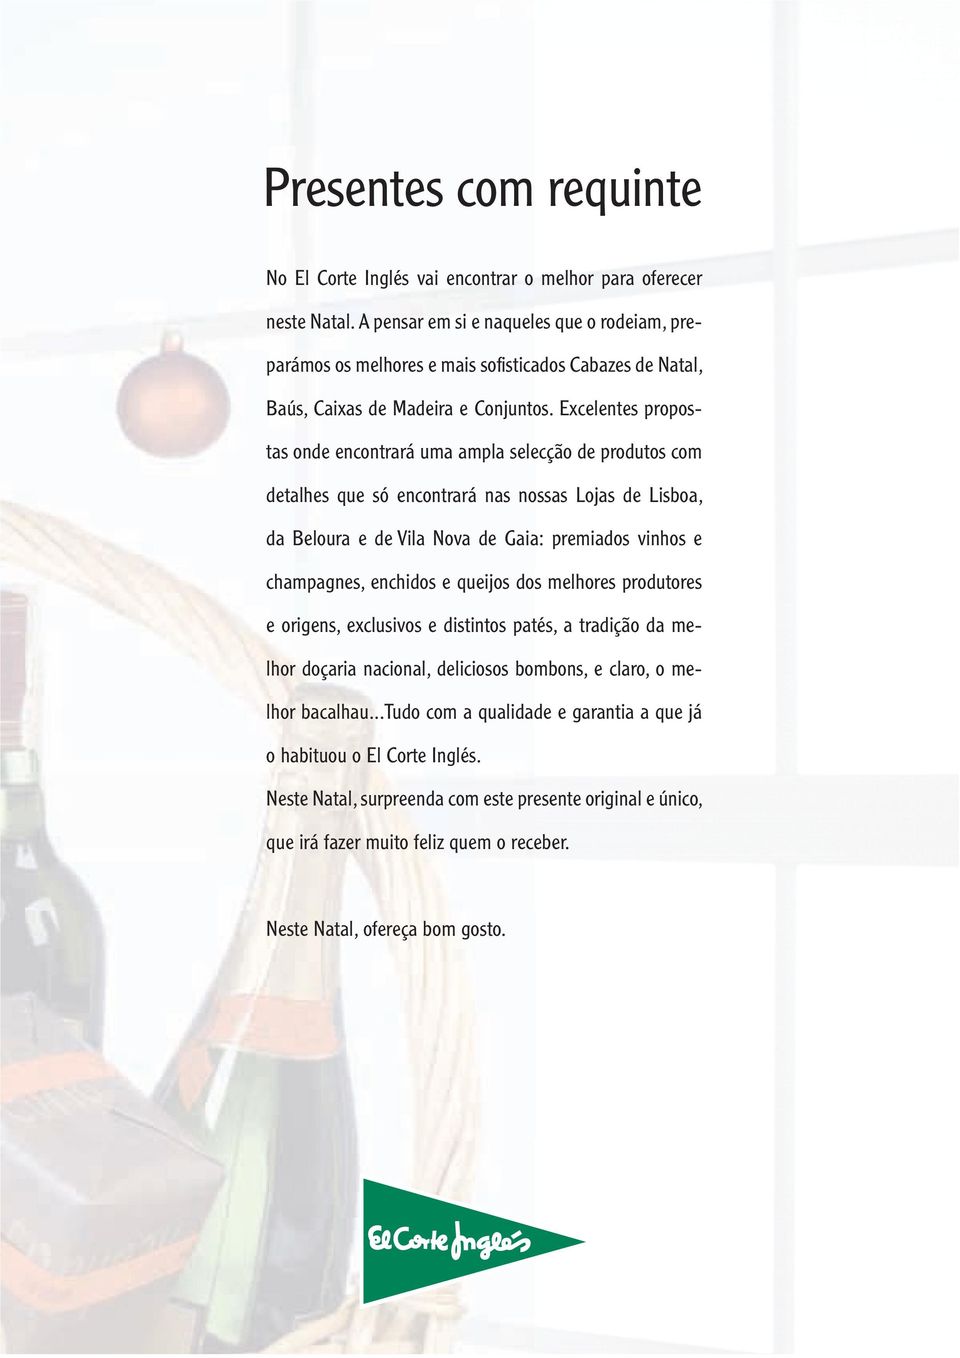 Excelentes propostas onde encontrará uma ampla selecção de produtos com detalhes que só encontrará nas nossas Lojas de Lisboa, da Beloura e de Vila Nova de Gaia: premiados vinhos e champagnes,